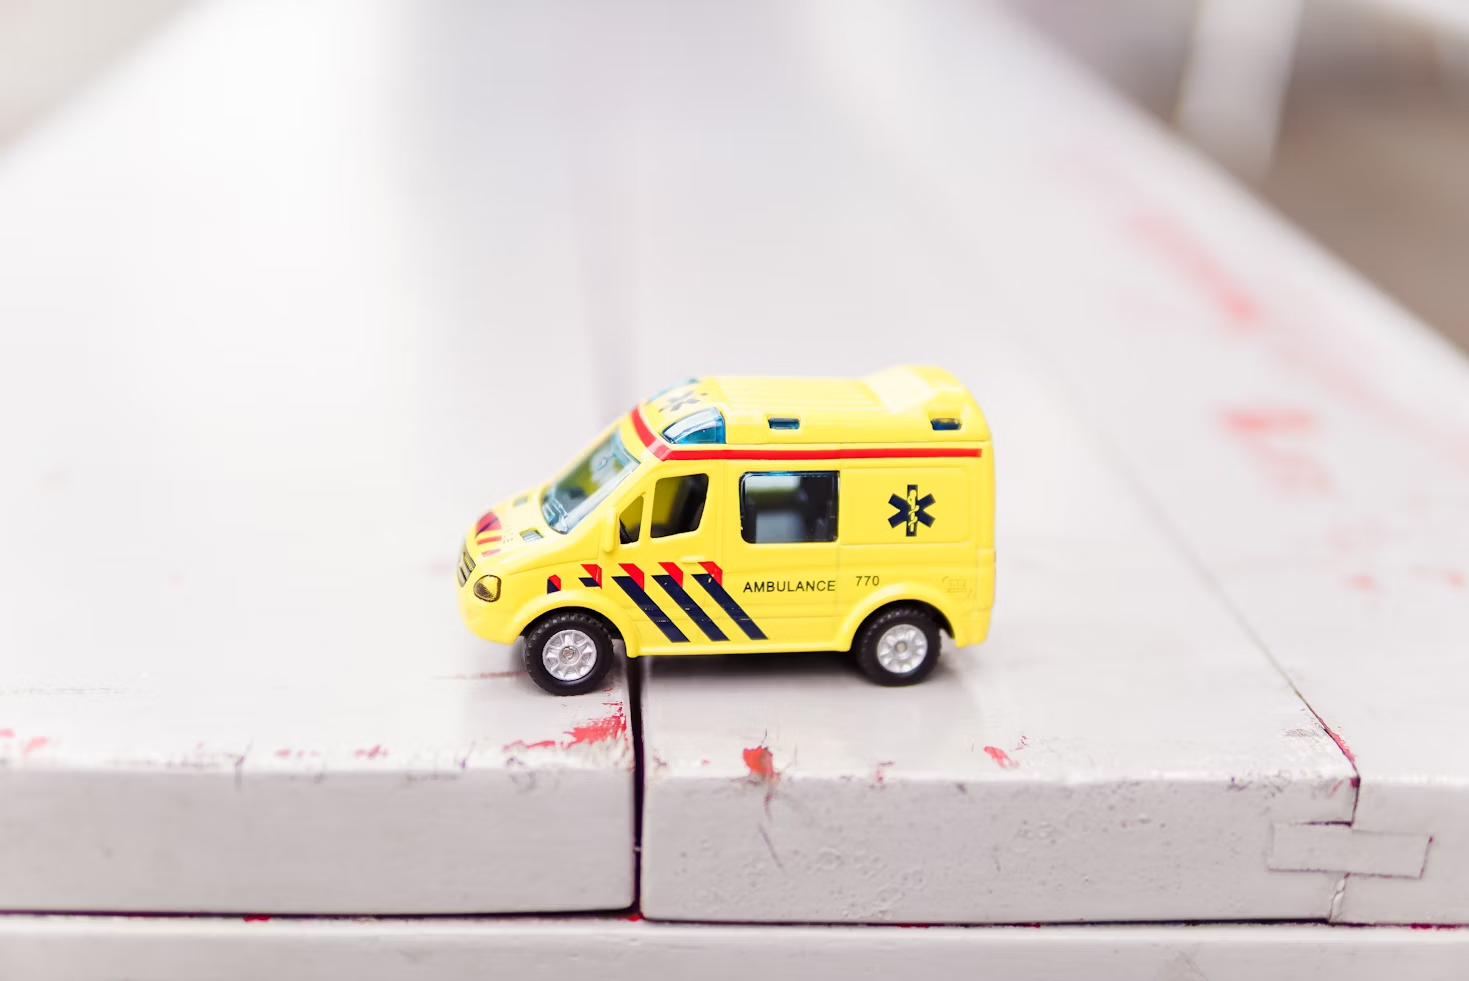 Jouet représentant un camion d'ambulance jaune avec des rayures bleues marines et rouges